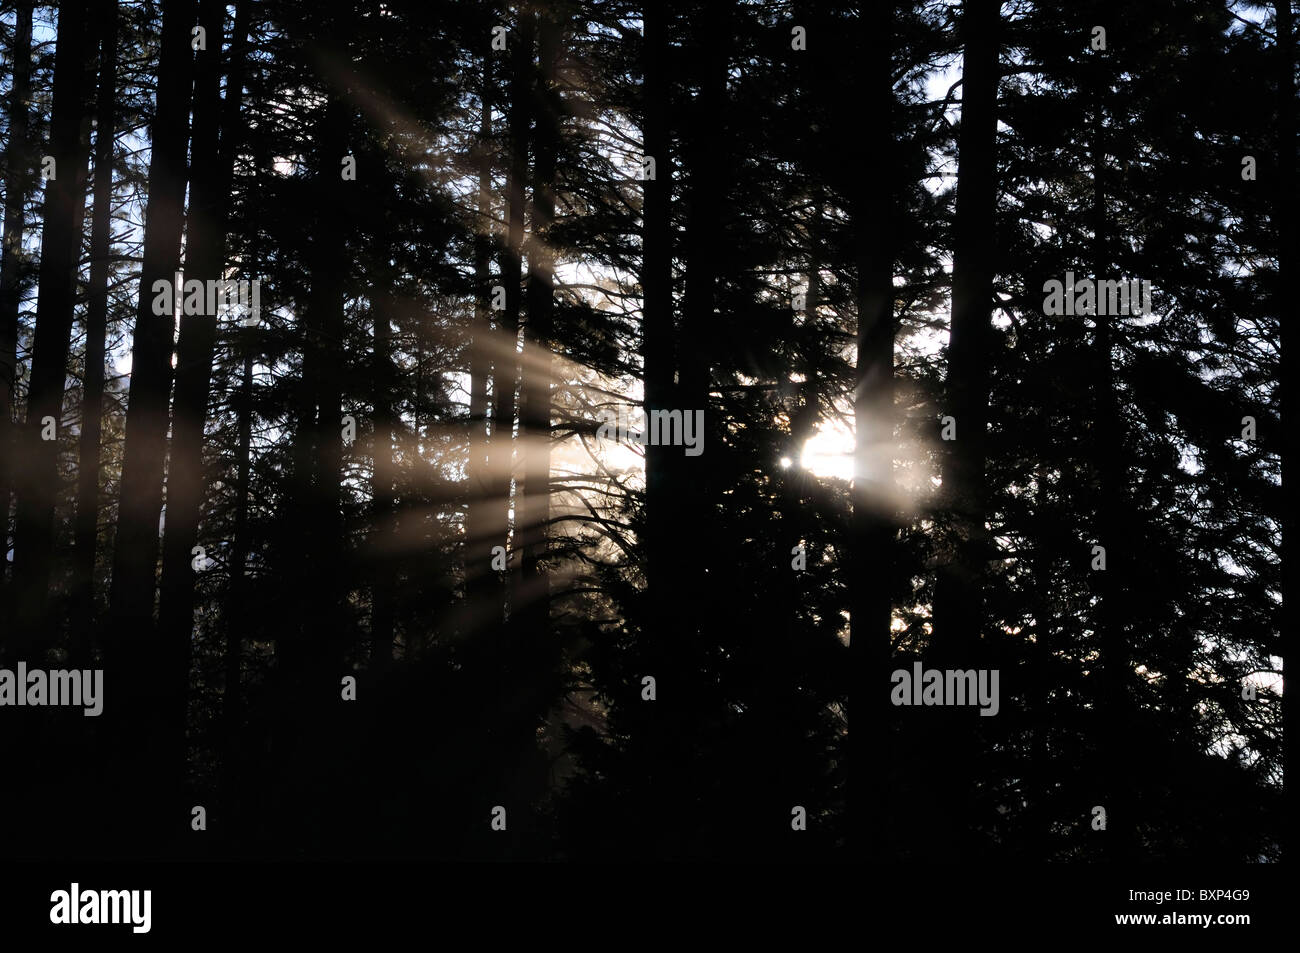 La lumière brille à travers les arbres de transmission du faisceau lumineux silhouette rétro-éclairé Banque D'Images